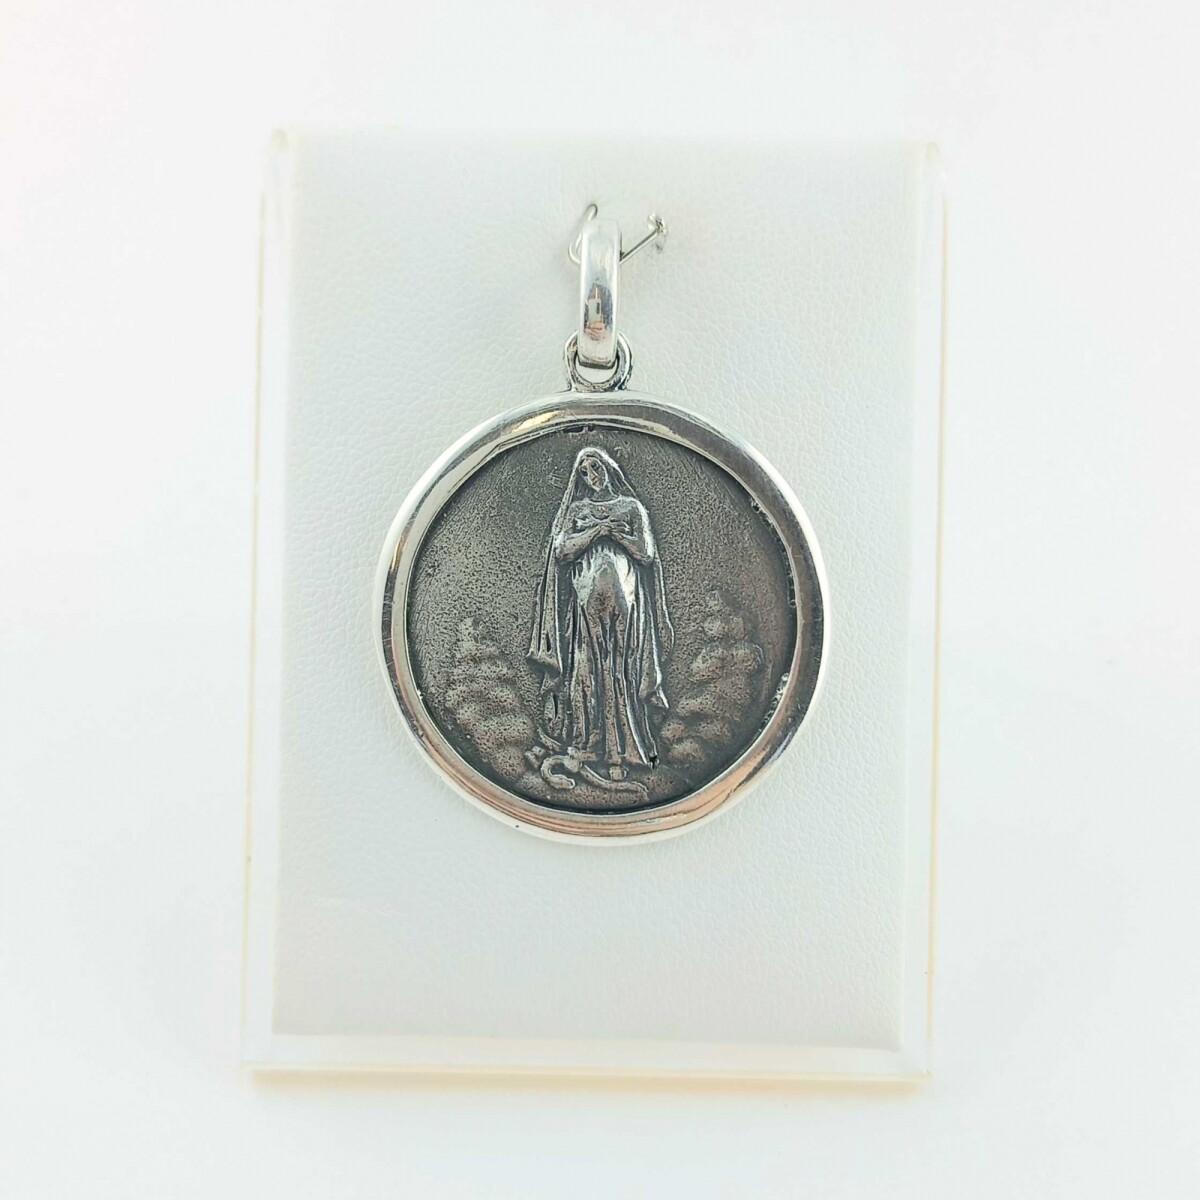 Medalla religiosa de plata 925, VIRGEN DE LA DULCE ESPERA. 